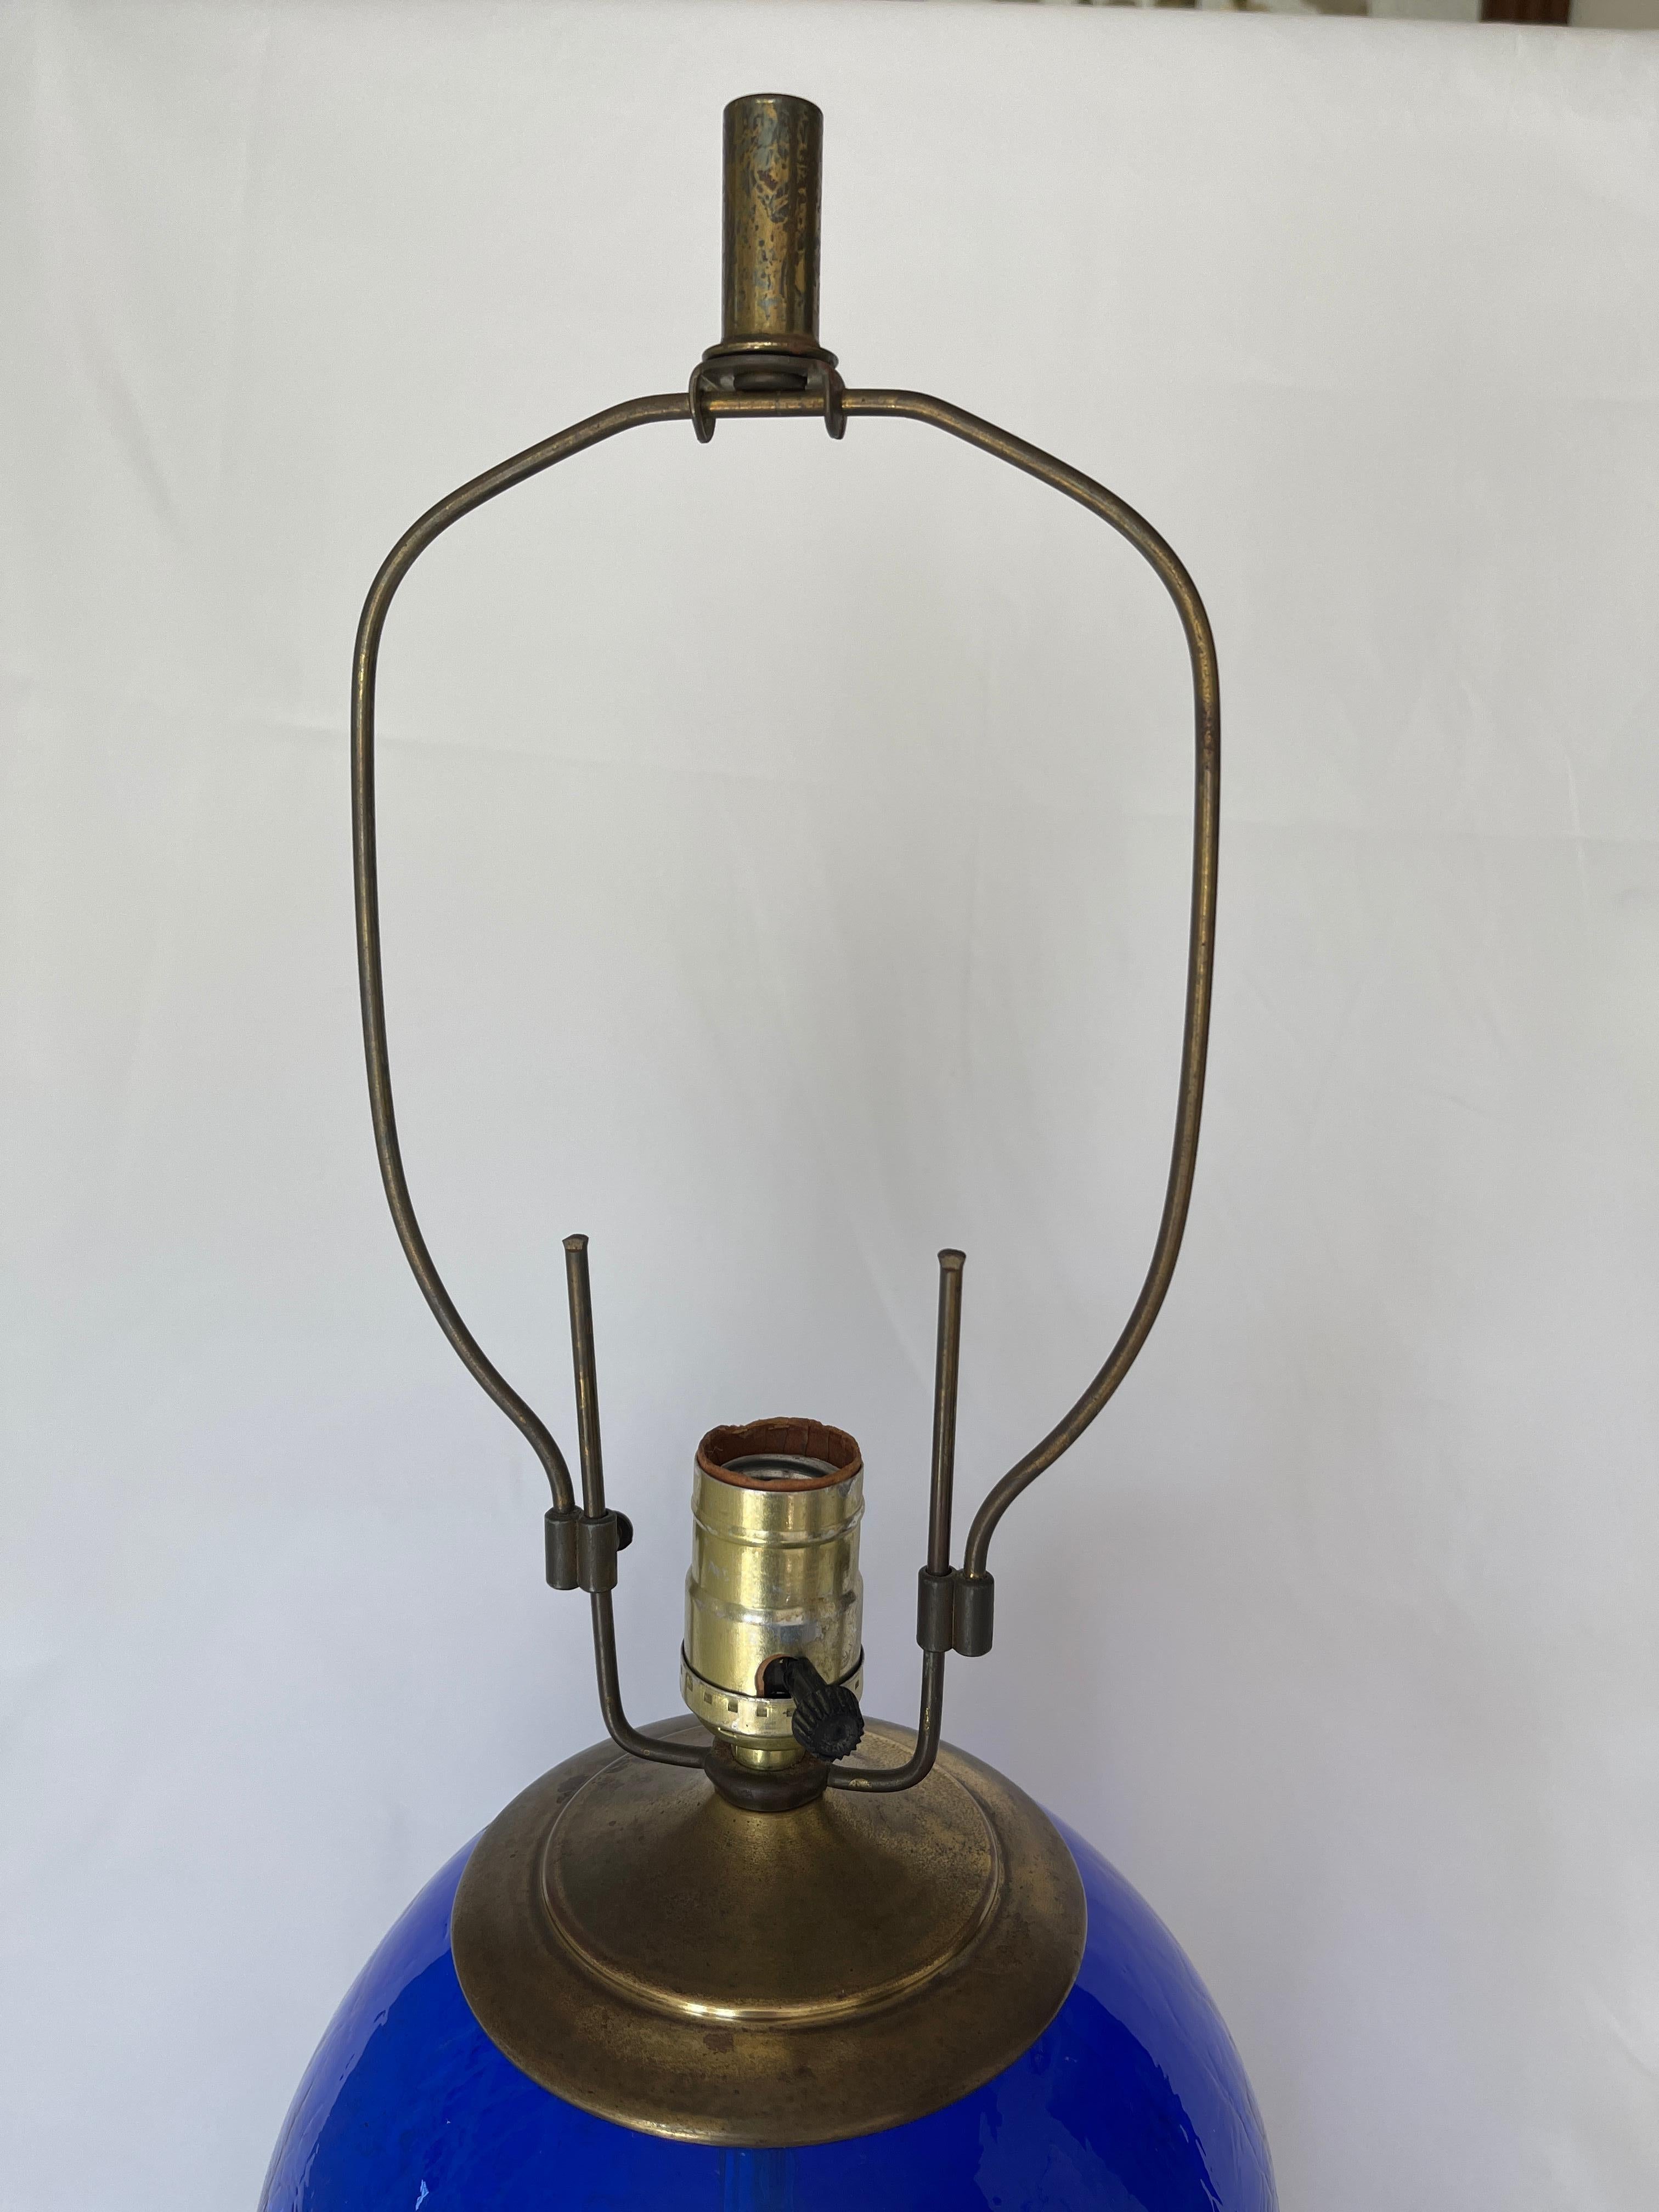 Blenko Signed Blue Crackled Glass Barrel Lamp For Sale 3